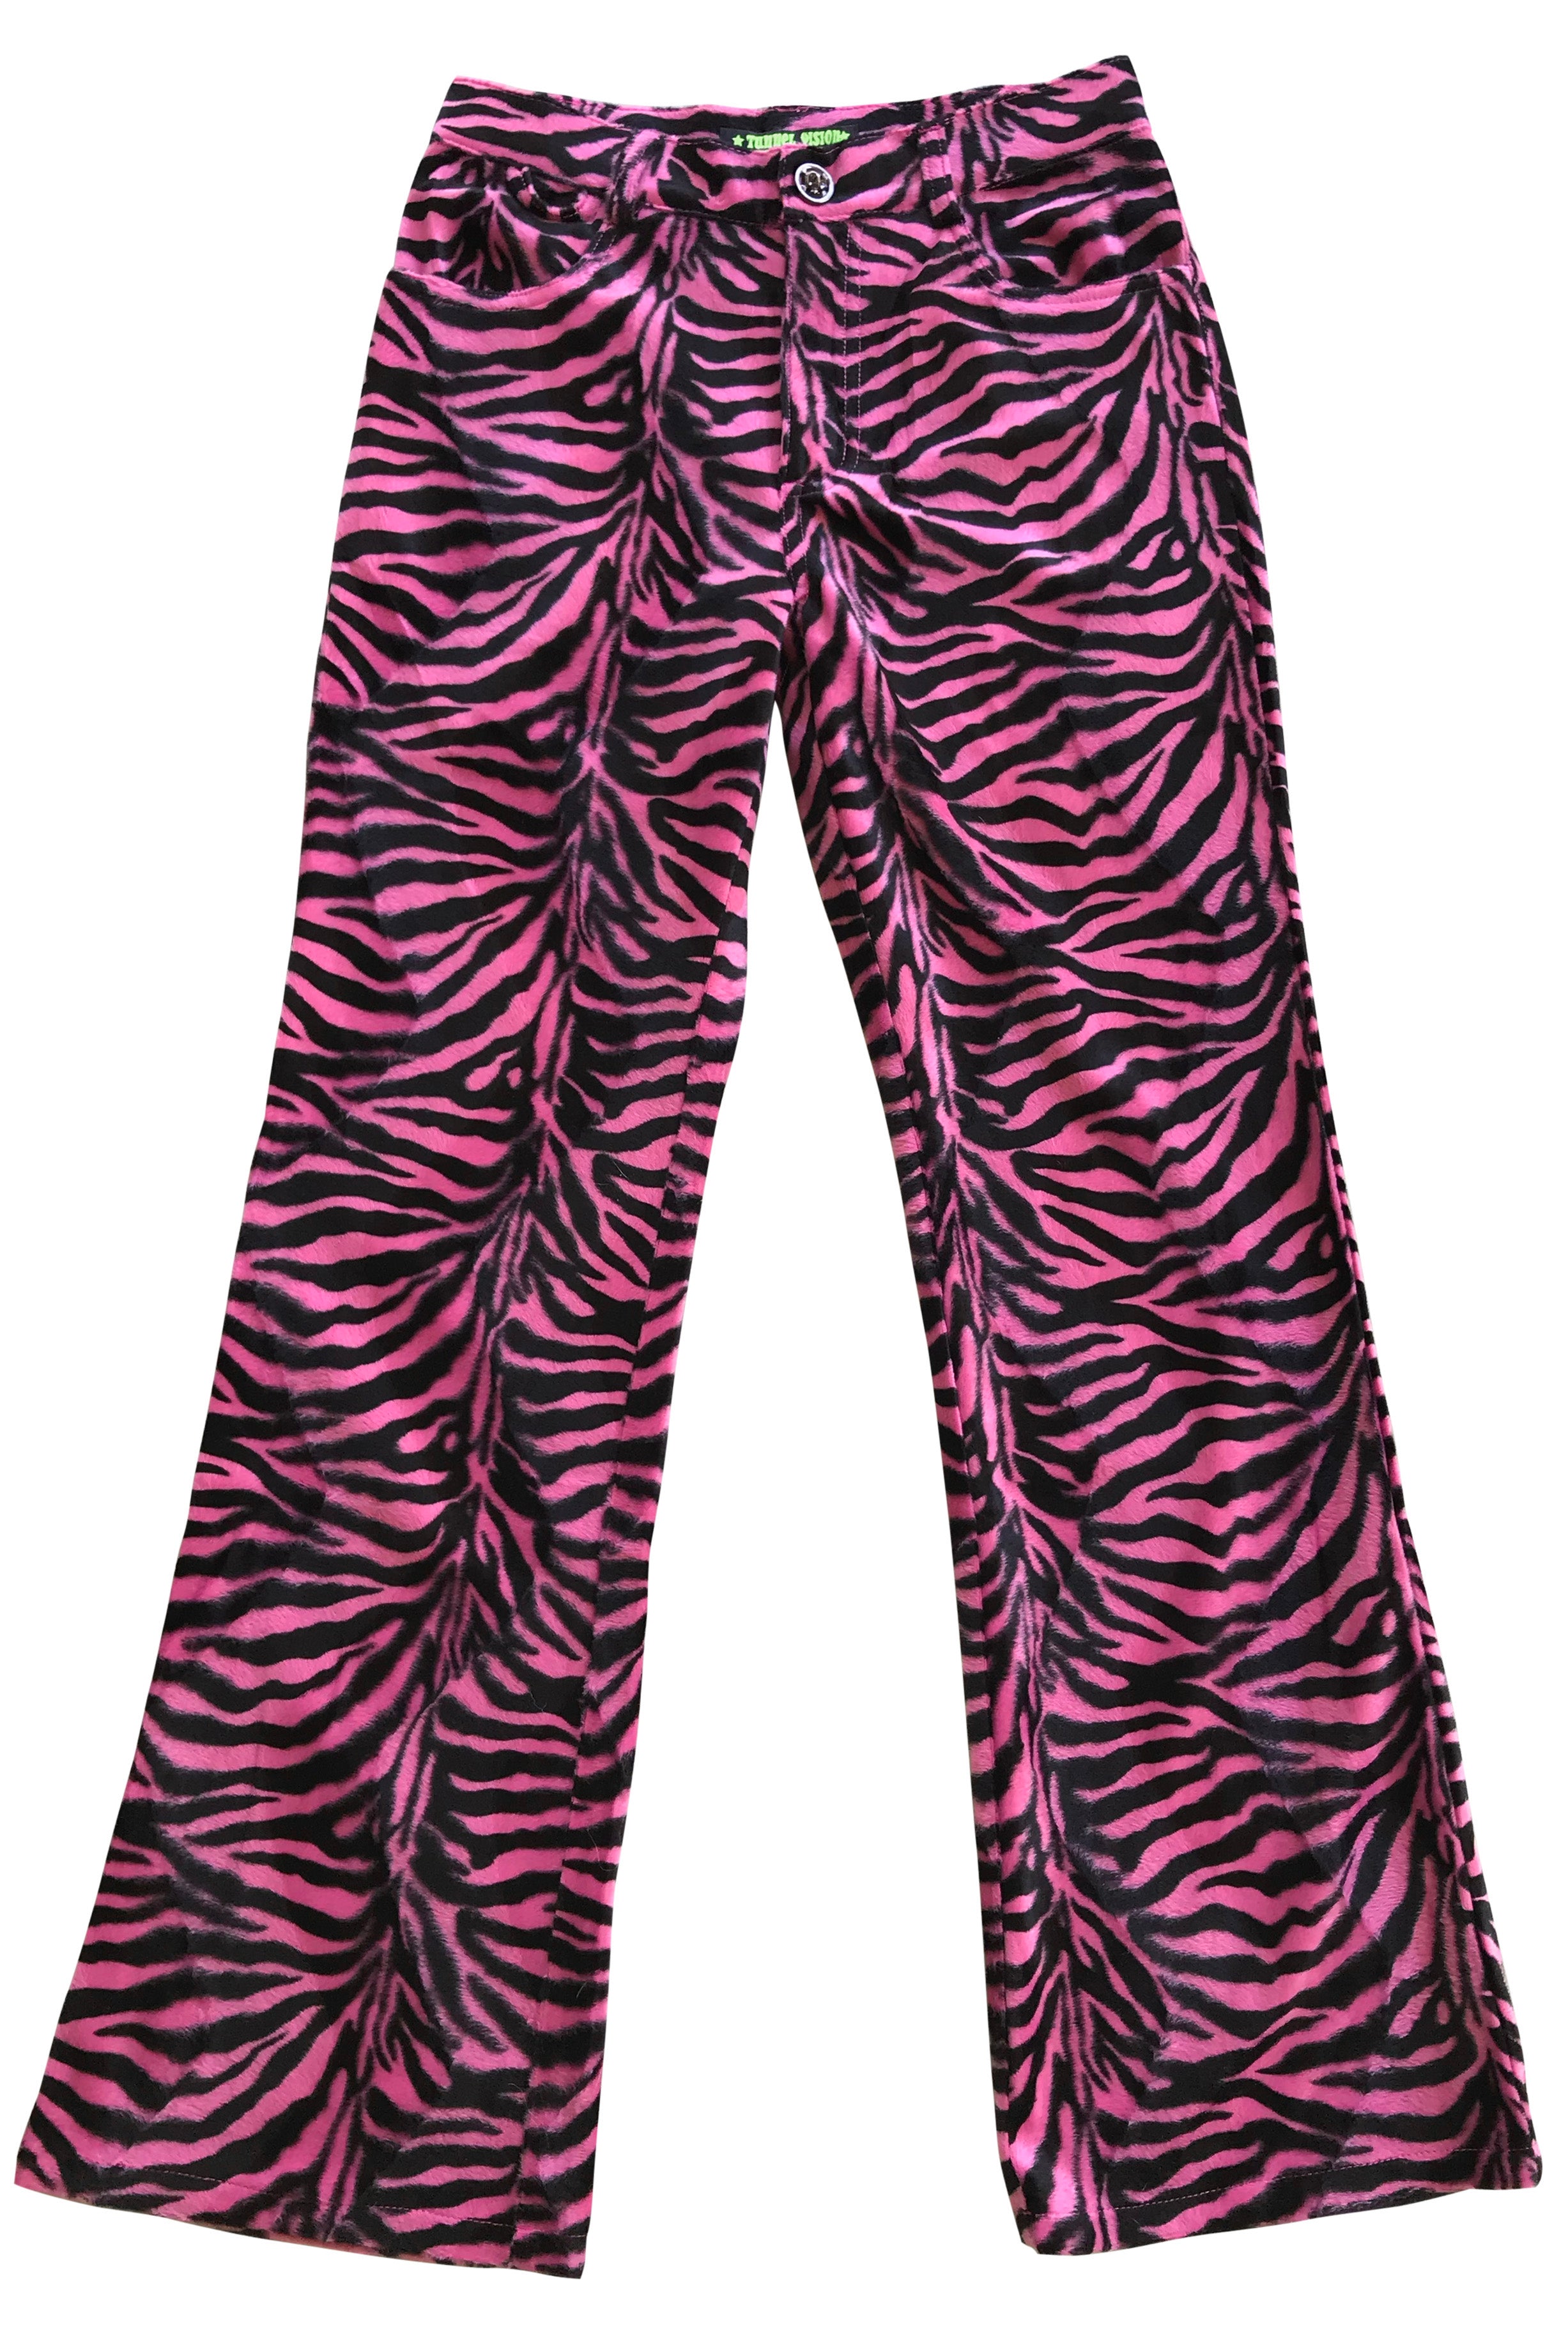 Neon Pink Zebra Velvet Leggings - Women's